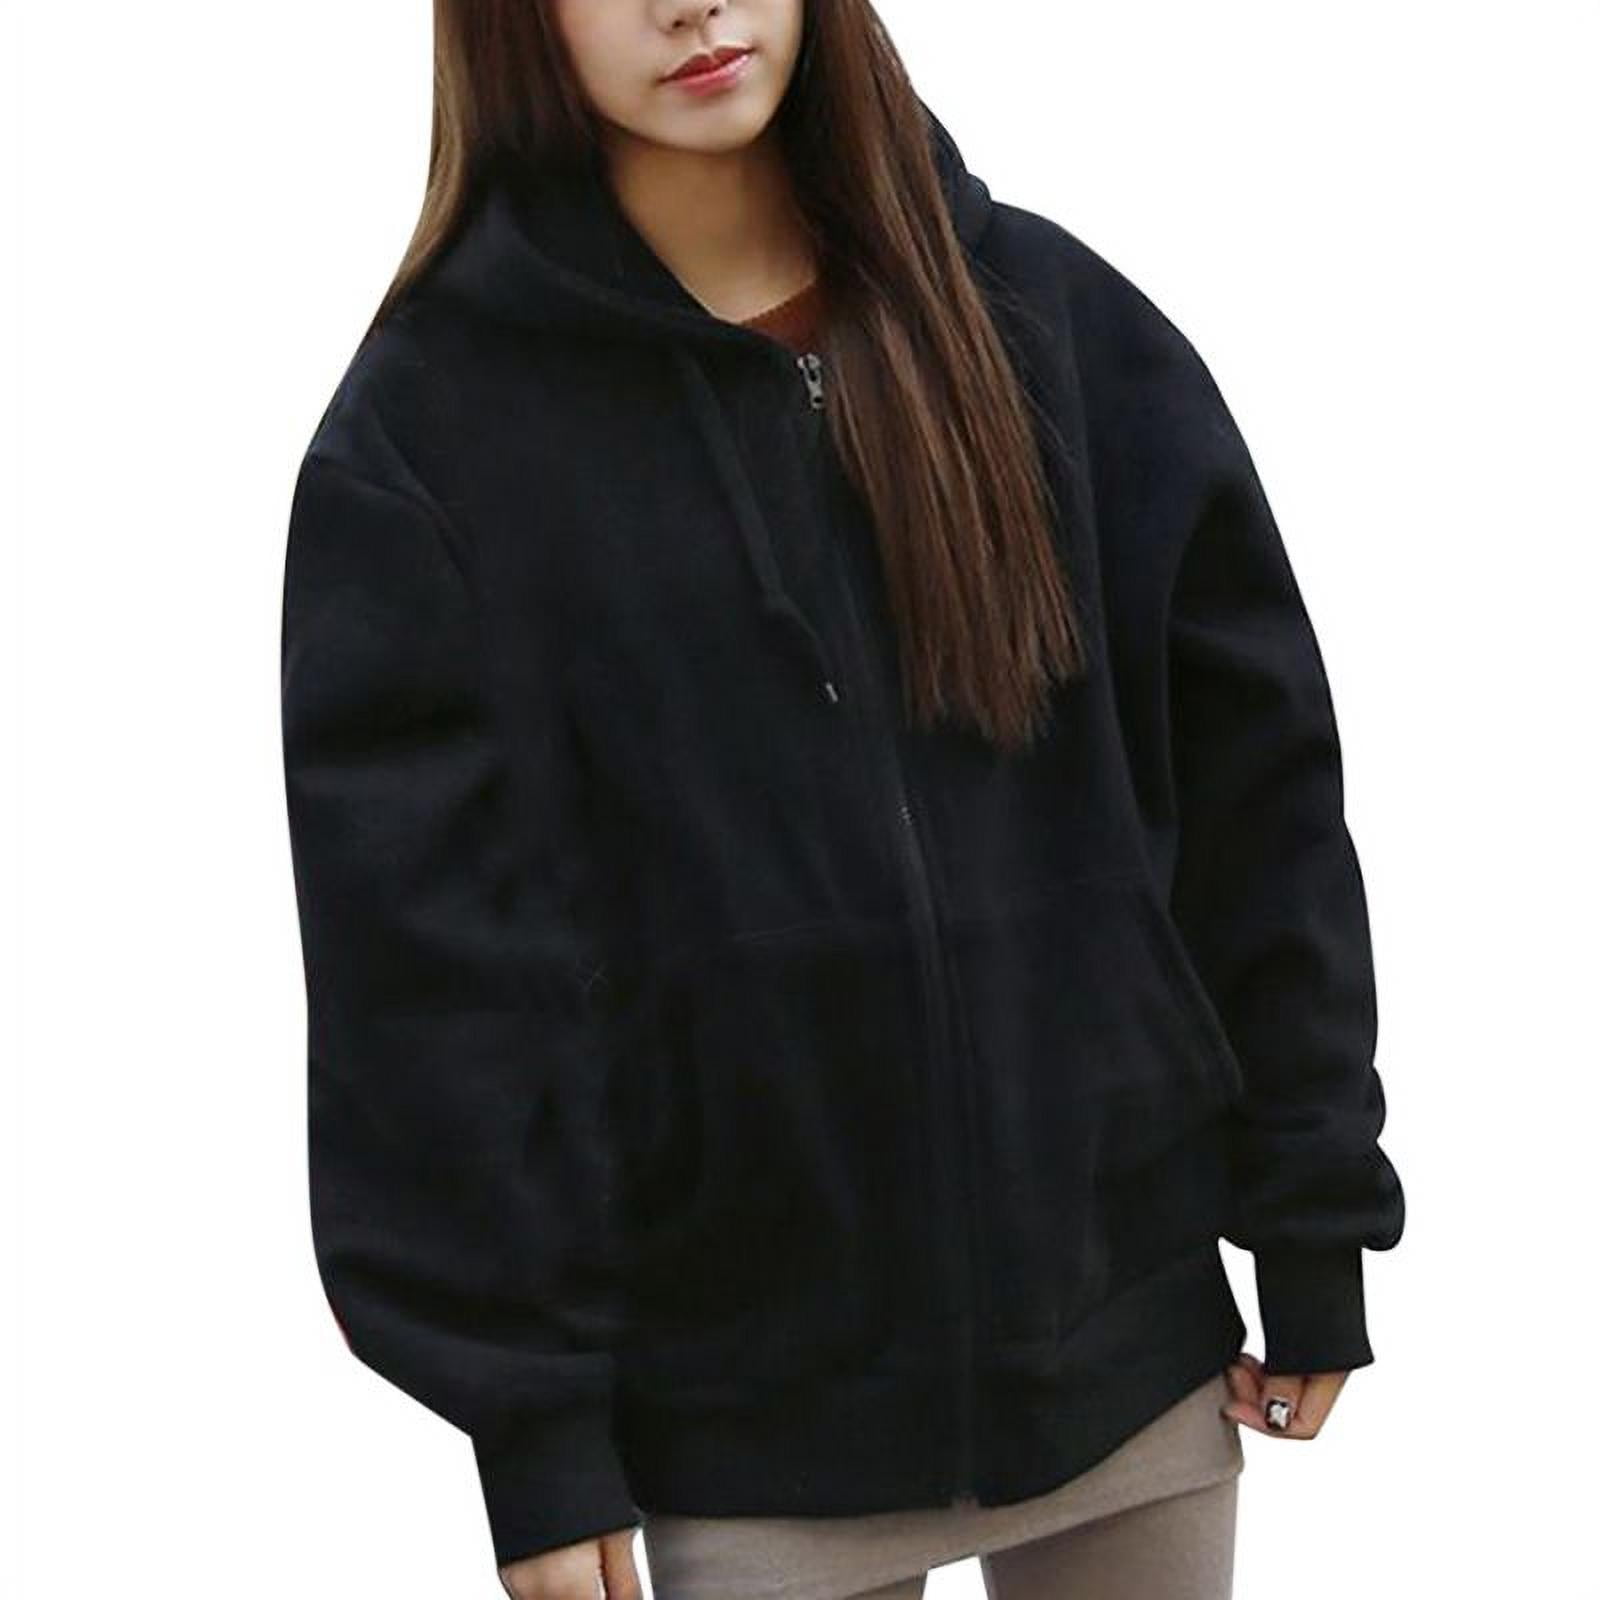 Zalanala Women Long Sleeve Hooded Sweatshirt Coat Winter Warm Wool with Zipper Pockets Cotton Coat Outwear 